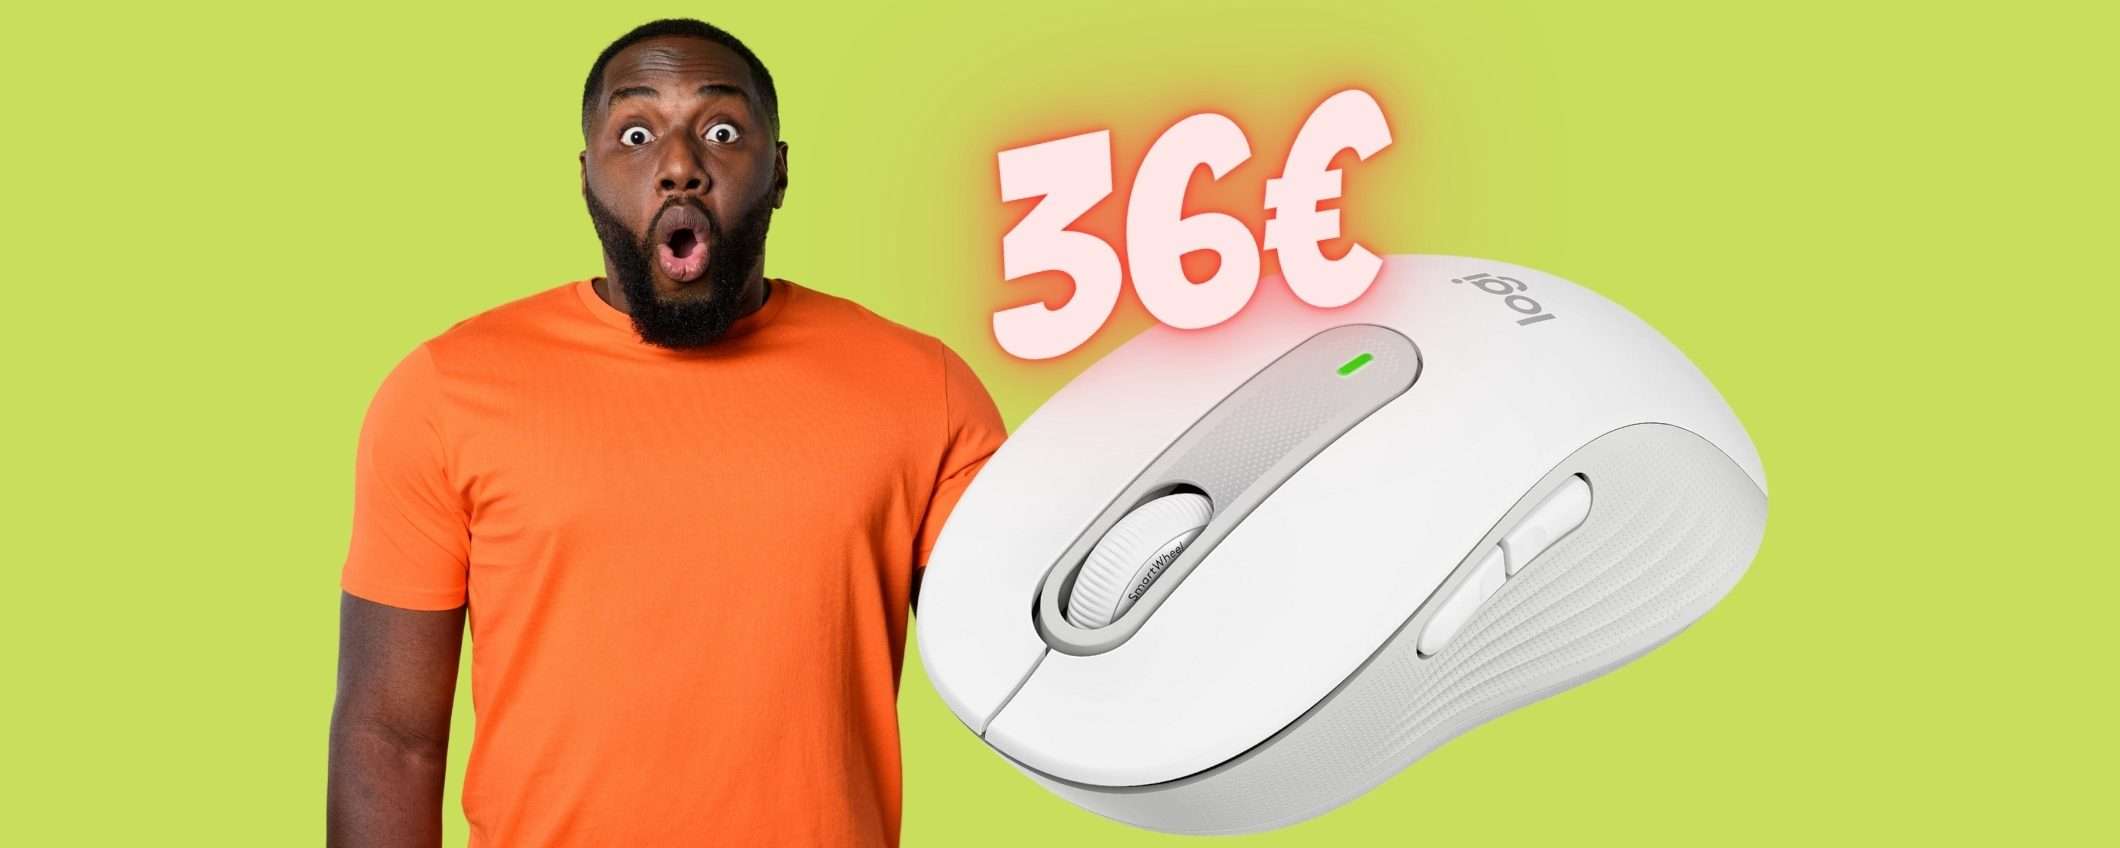 Logitech Signature M650: mouse wireless TOP a PREZZO MINI (36€)